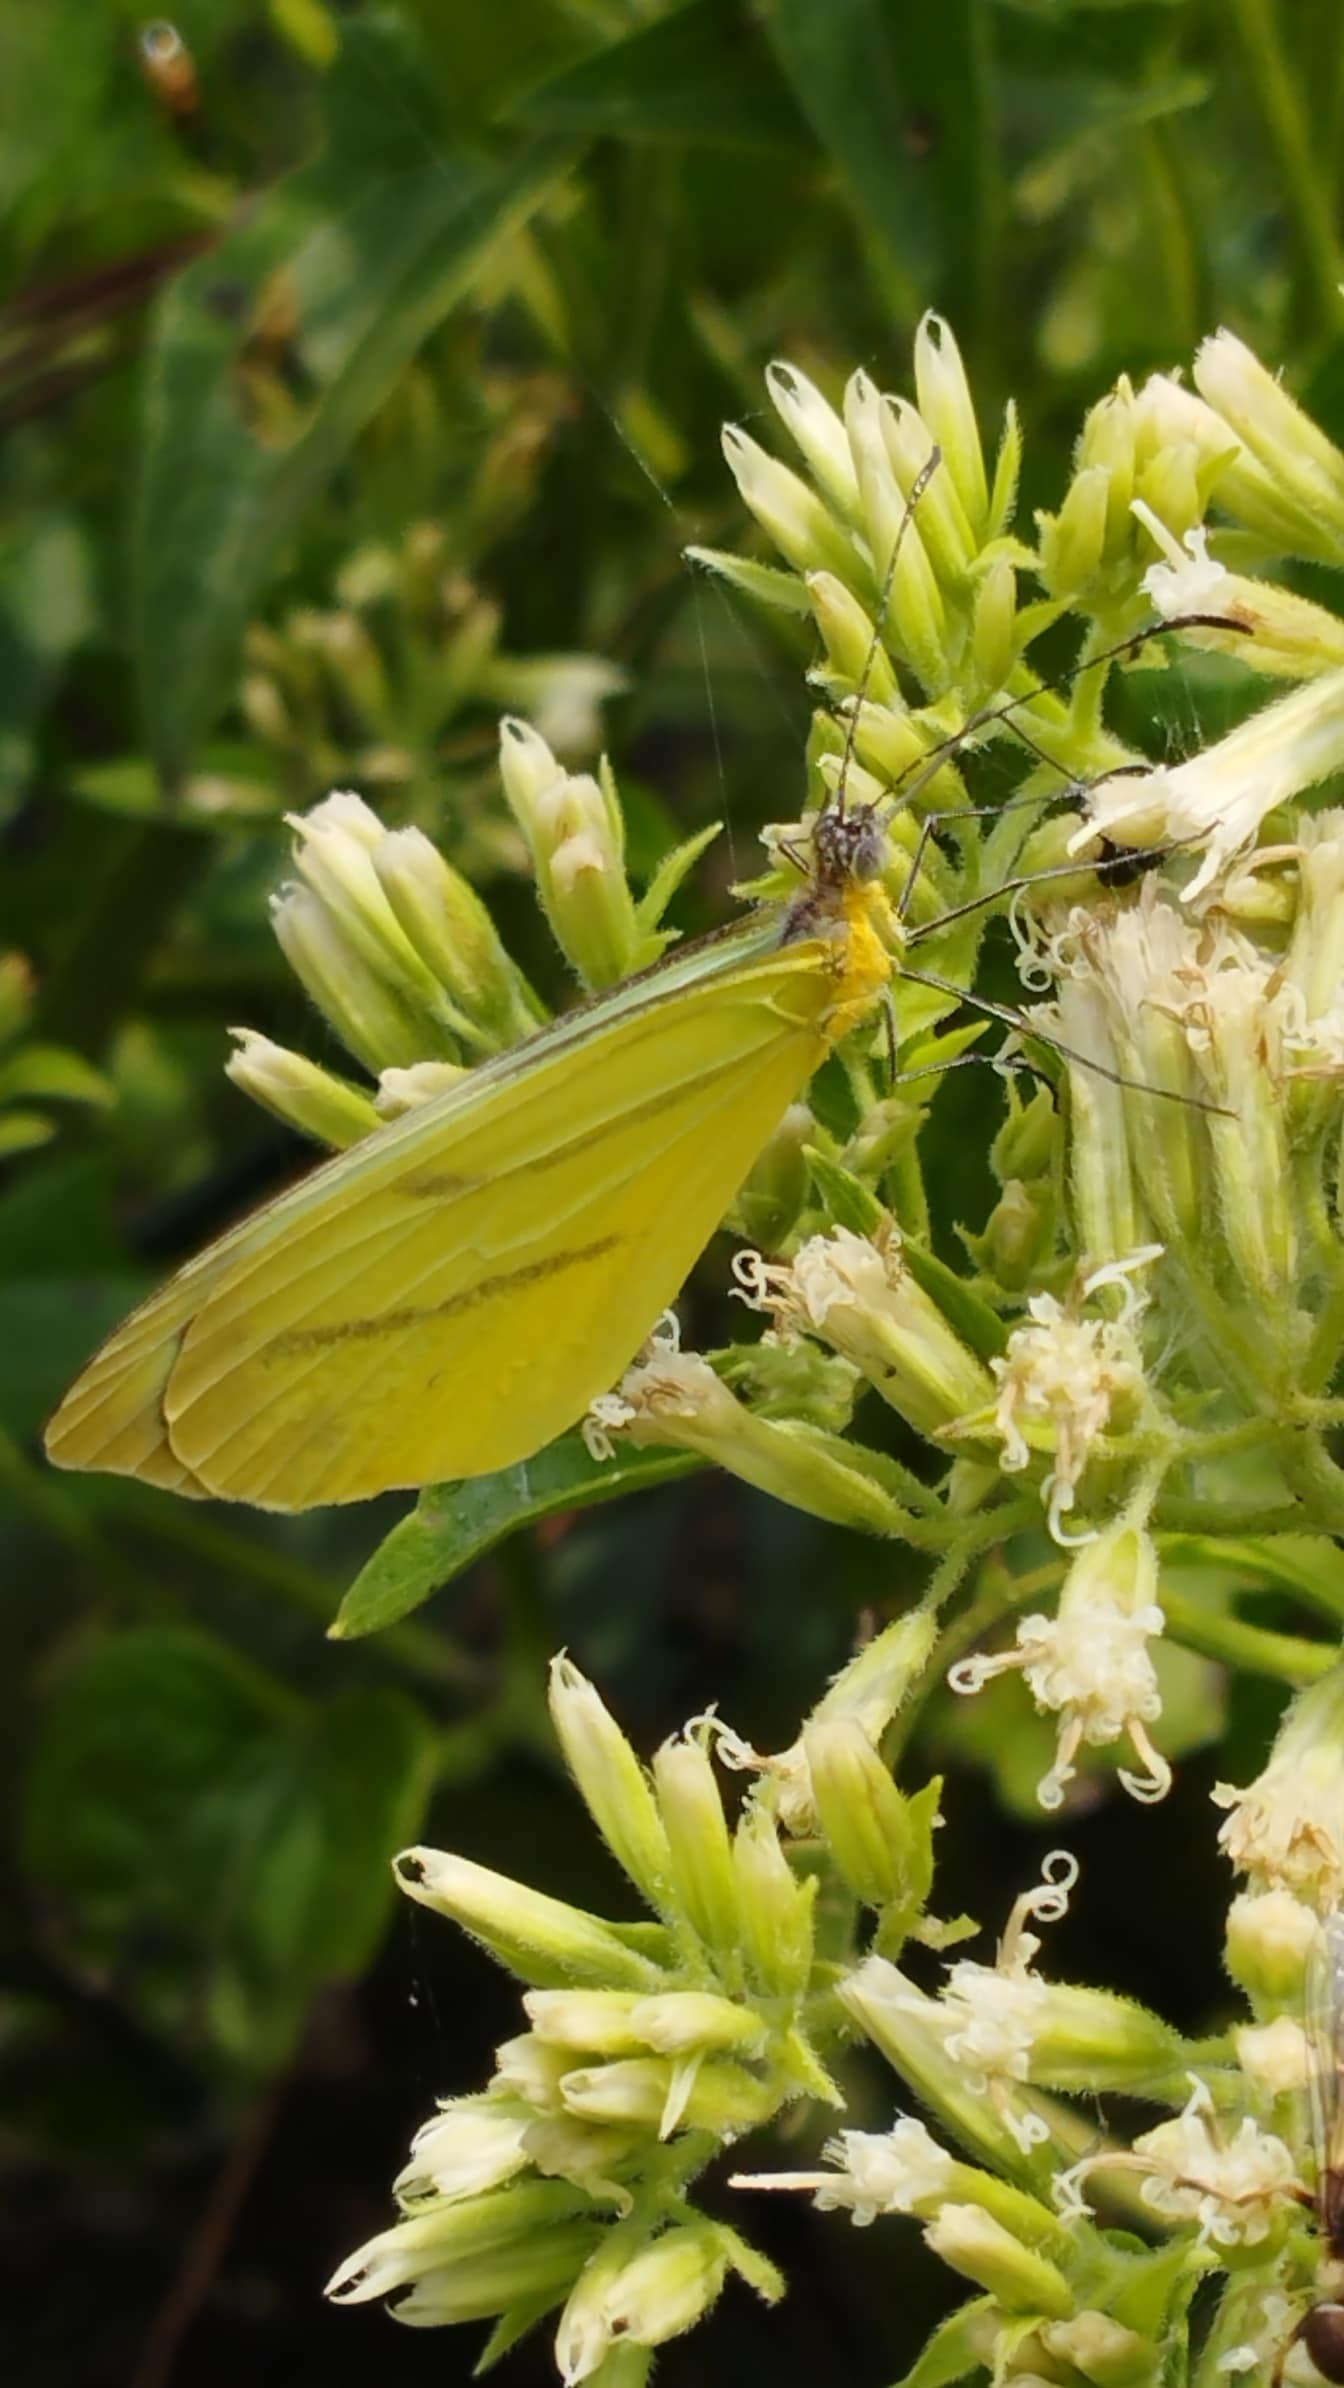 Cận cảnh con bướm màu vàng với đôi cánh khép kín trên hoa (genus Enantia)